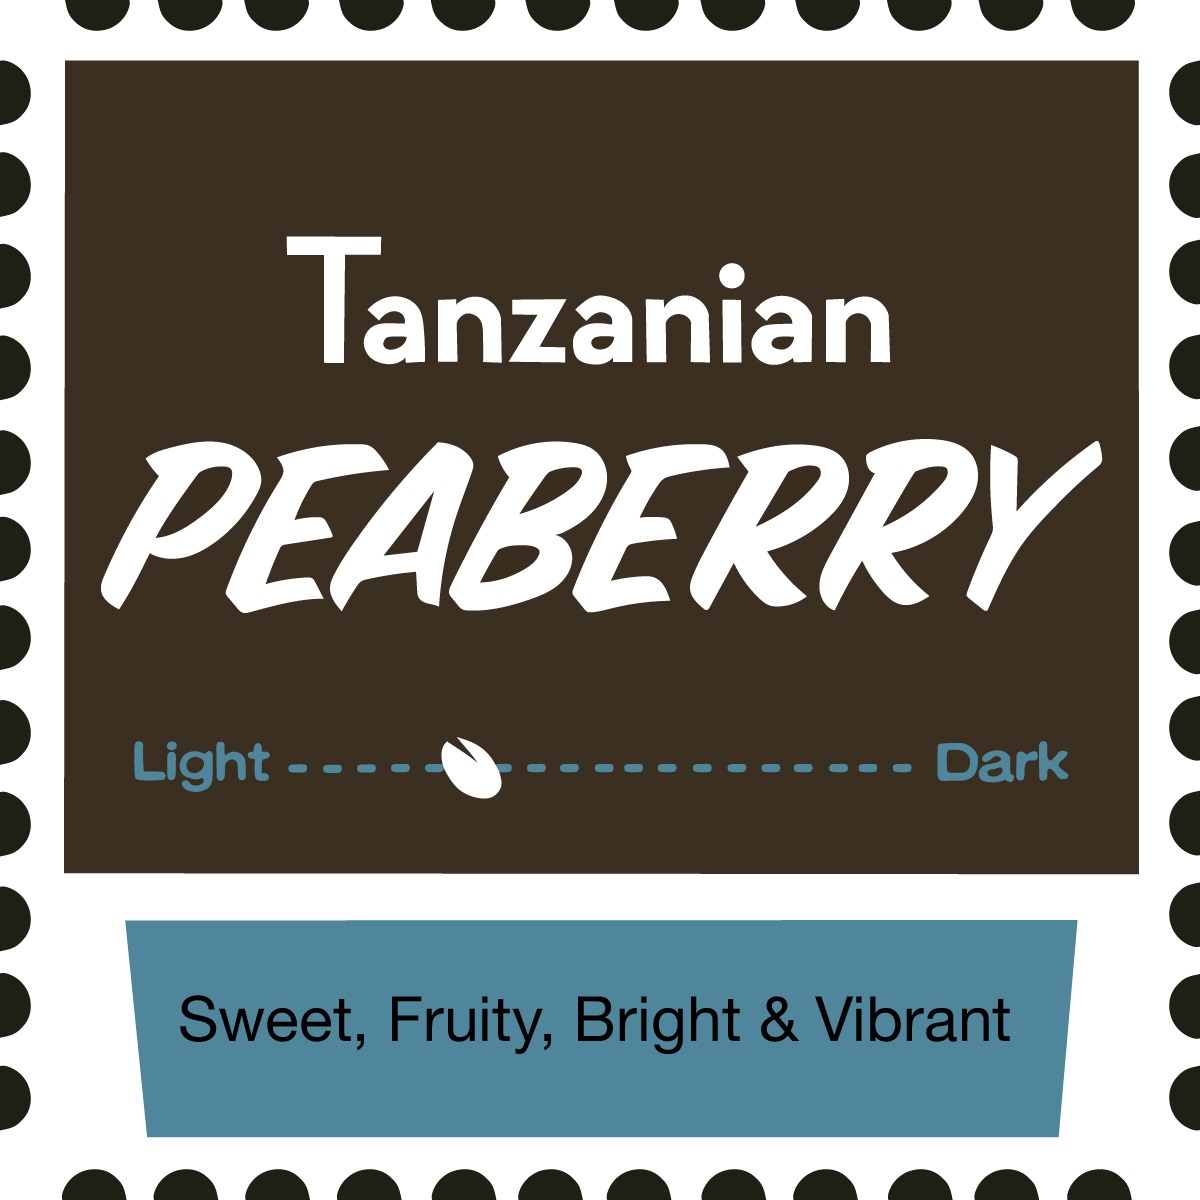 Tanzanian Peaberry